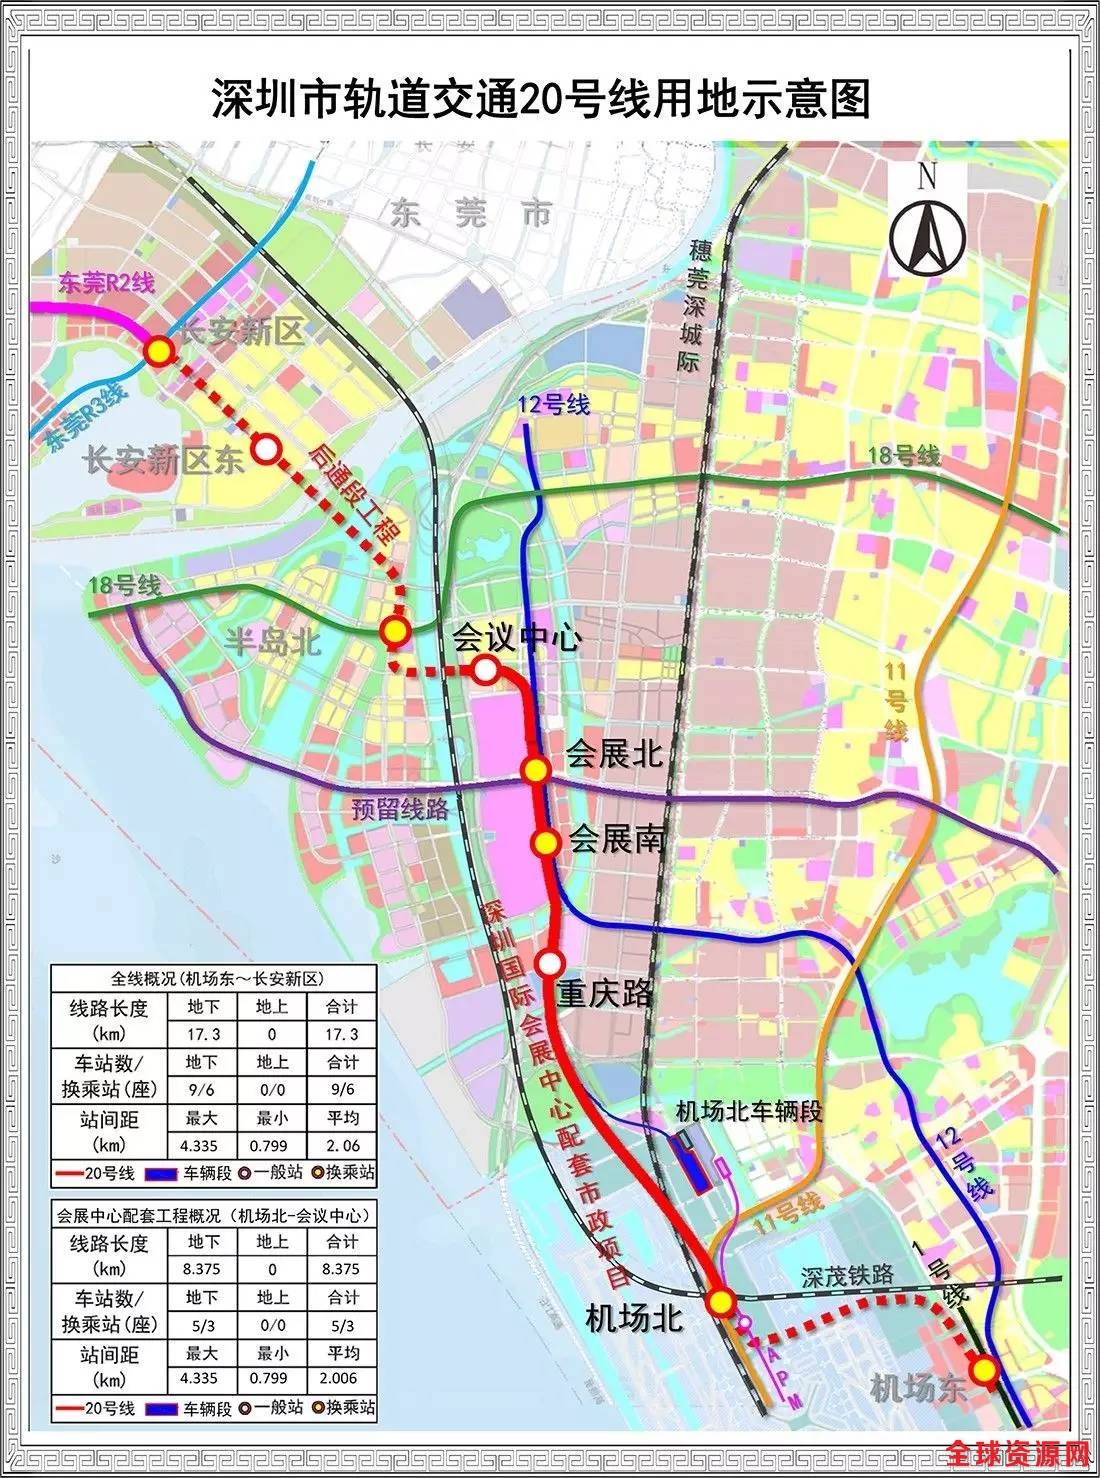 深圳地铁20号线是由中国铁建全线总承包